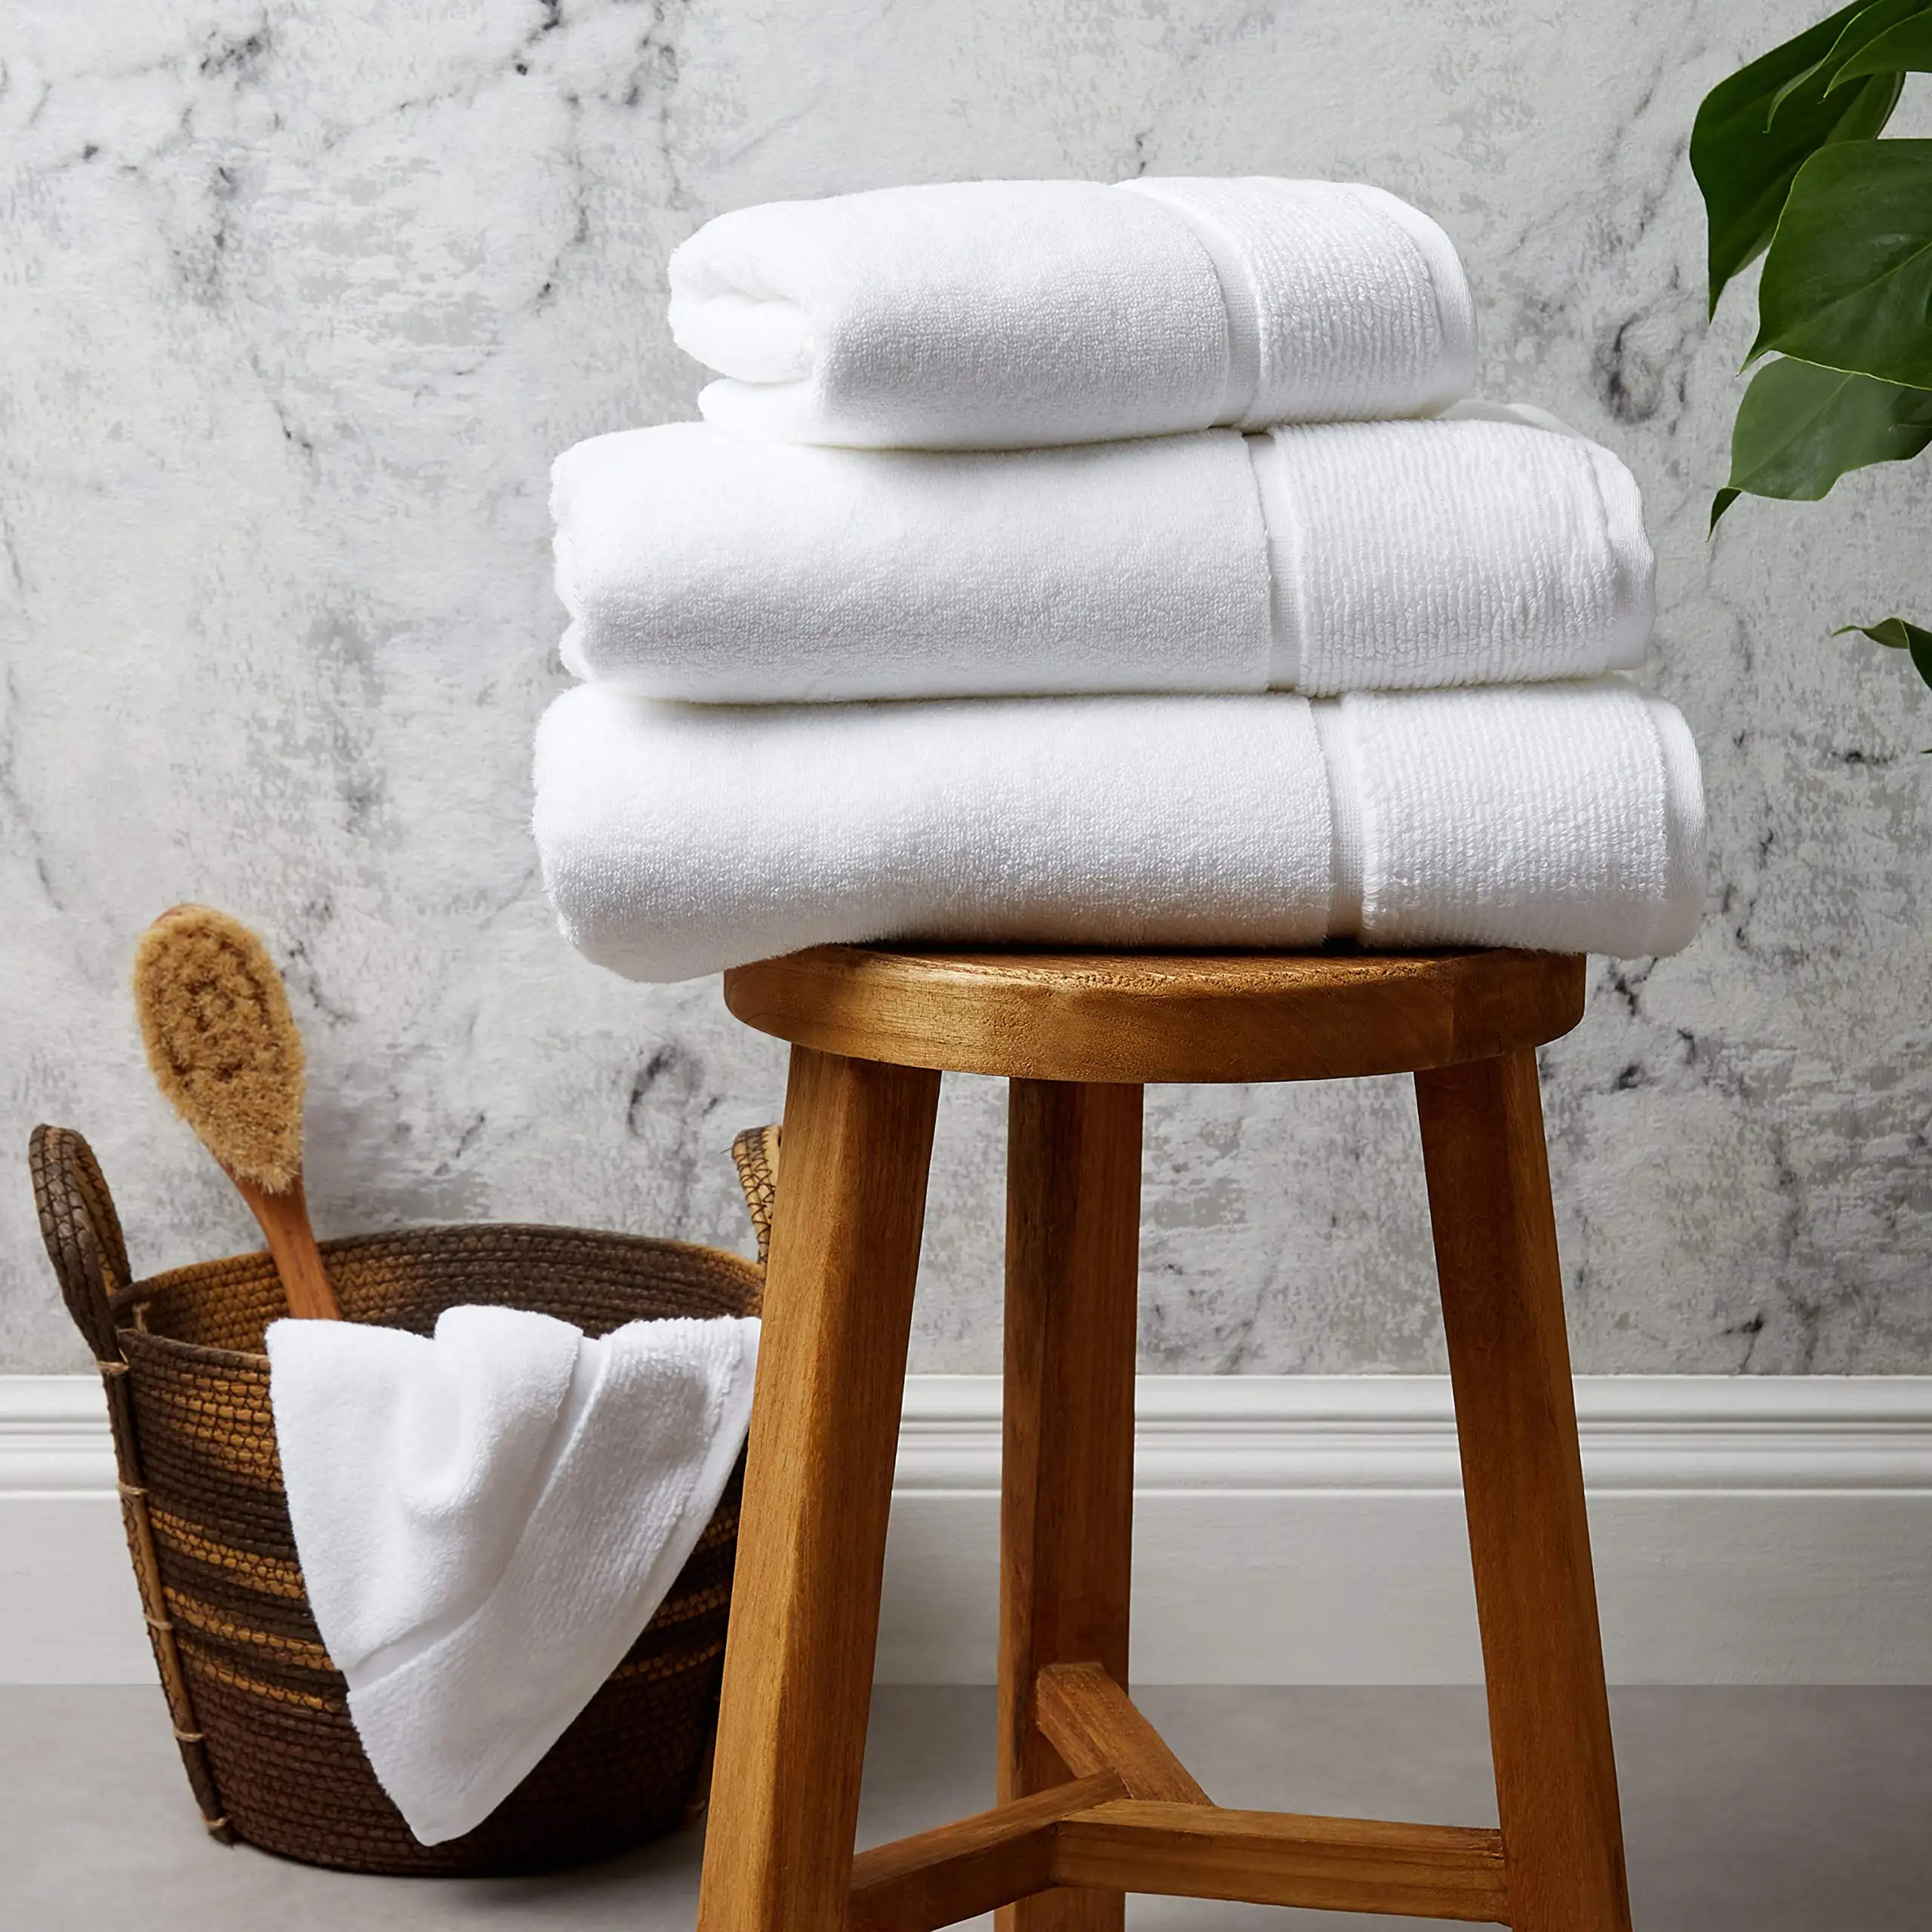 Morbido cotone bianco puro Hotel asciugamani da bagno a mano asciugamani da spiaggia per il viso per il commercio all'ingrosso a buon prezzo